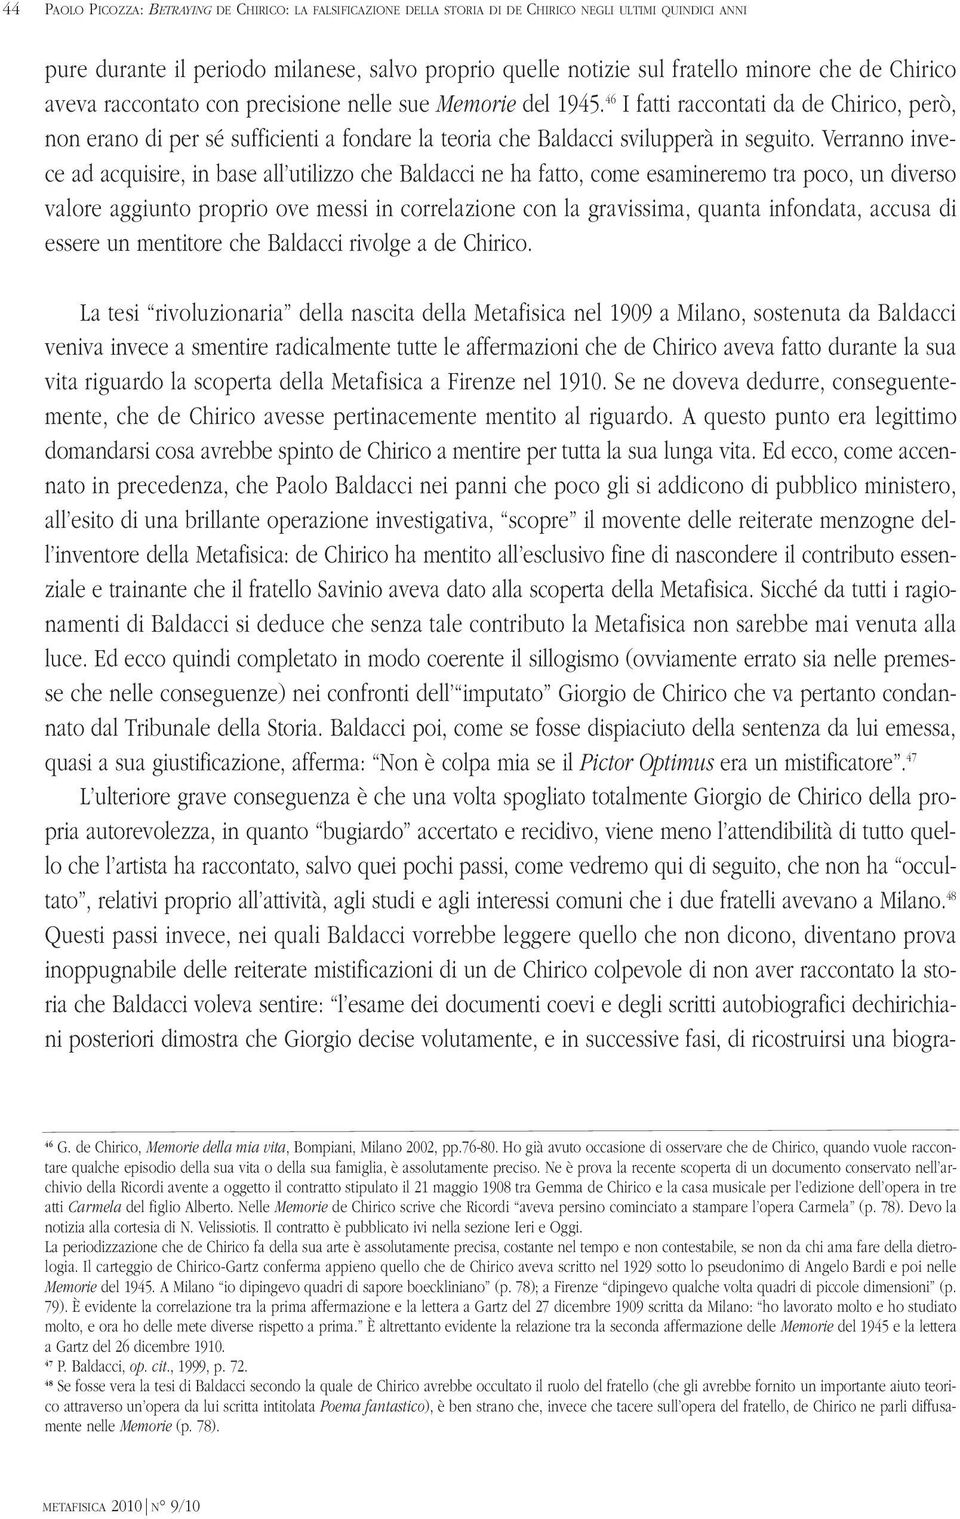 46 I fatti raccontati da de Chirico, però, non erano di per sé sufficienti a fondare la teoria che Baldacci svilupperà in seguito.